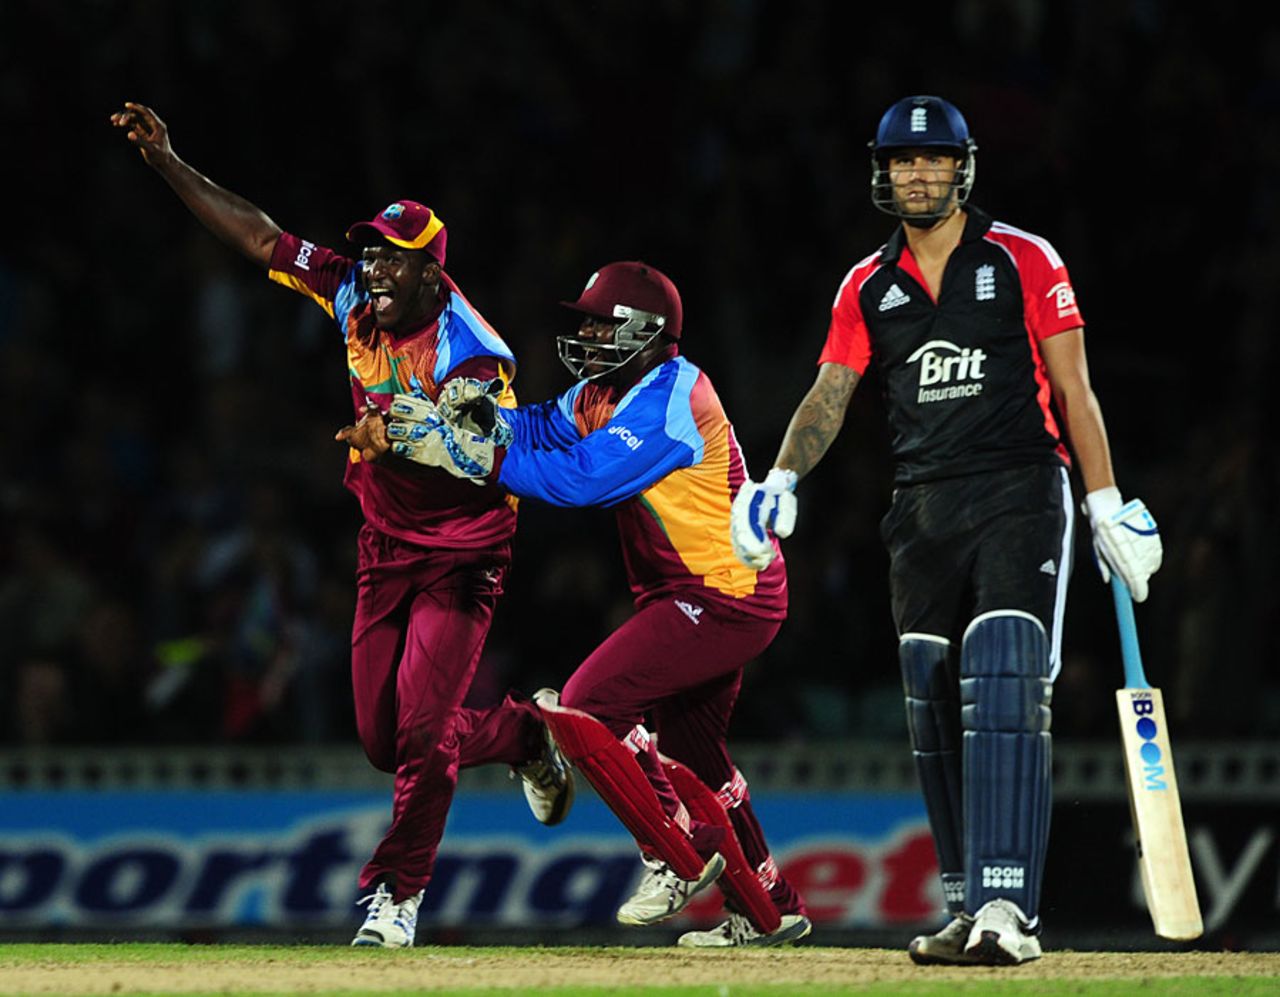 Darren Sammy celebrates after Jade Dernbach's dismissal flashed on the big screen, England v West Indies, 2nd Twenty20, The Oval, September 25, 2011